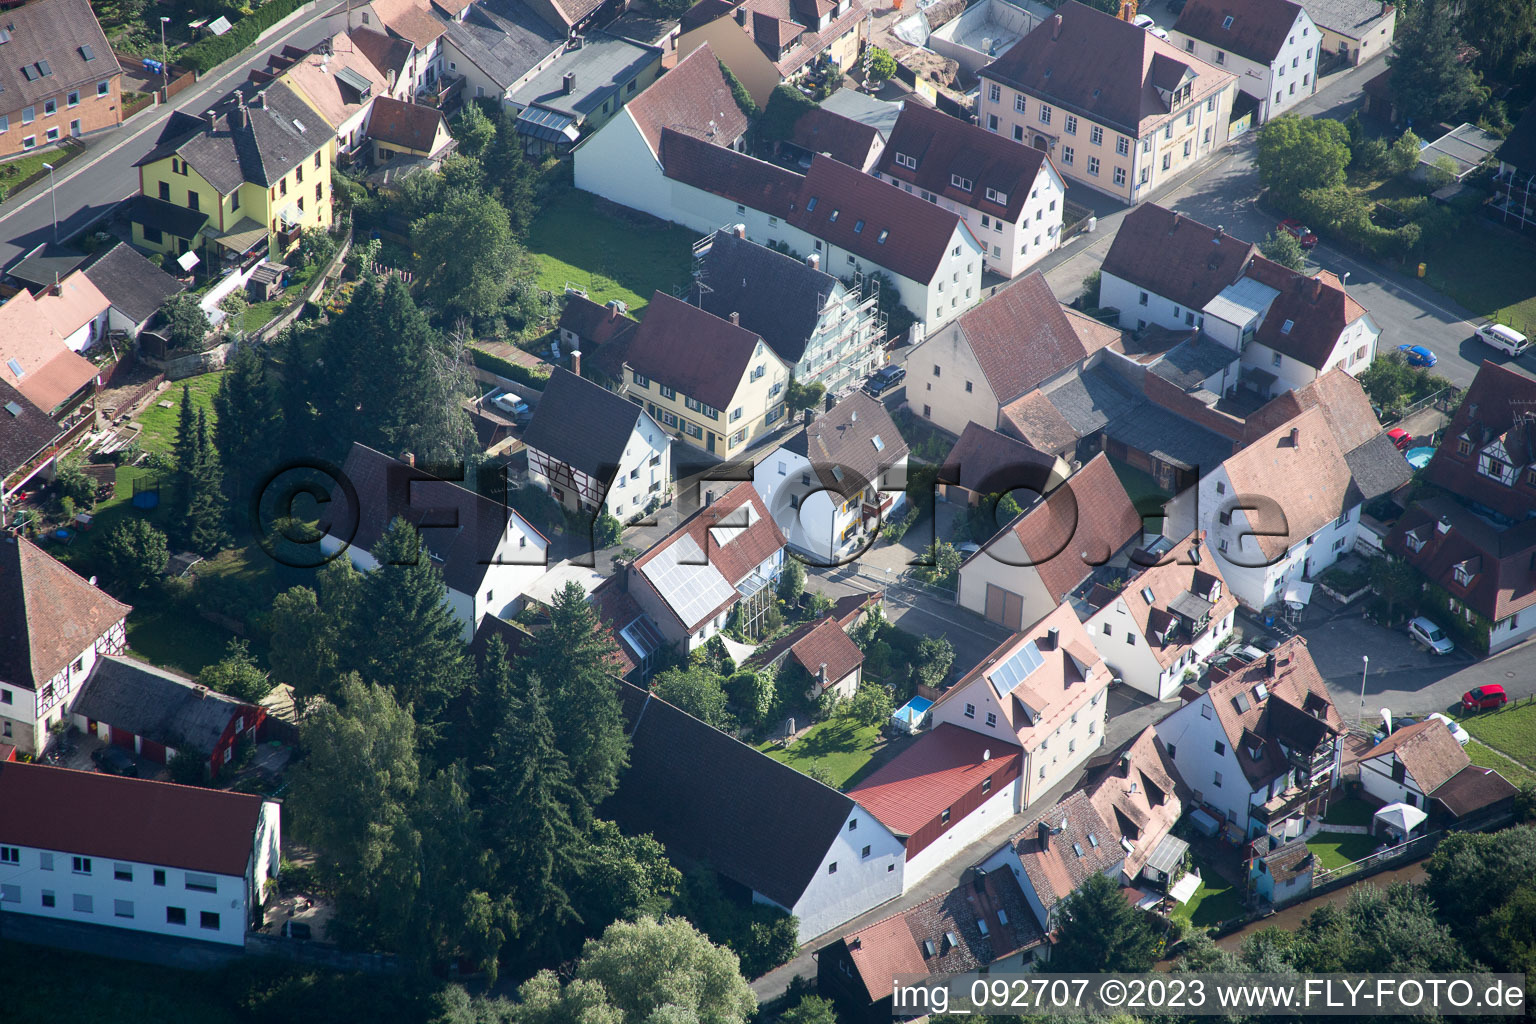 Frauenaurach im Bundesland Bayern, Deutschland von der Drohne aus gesehen